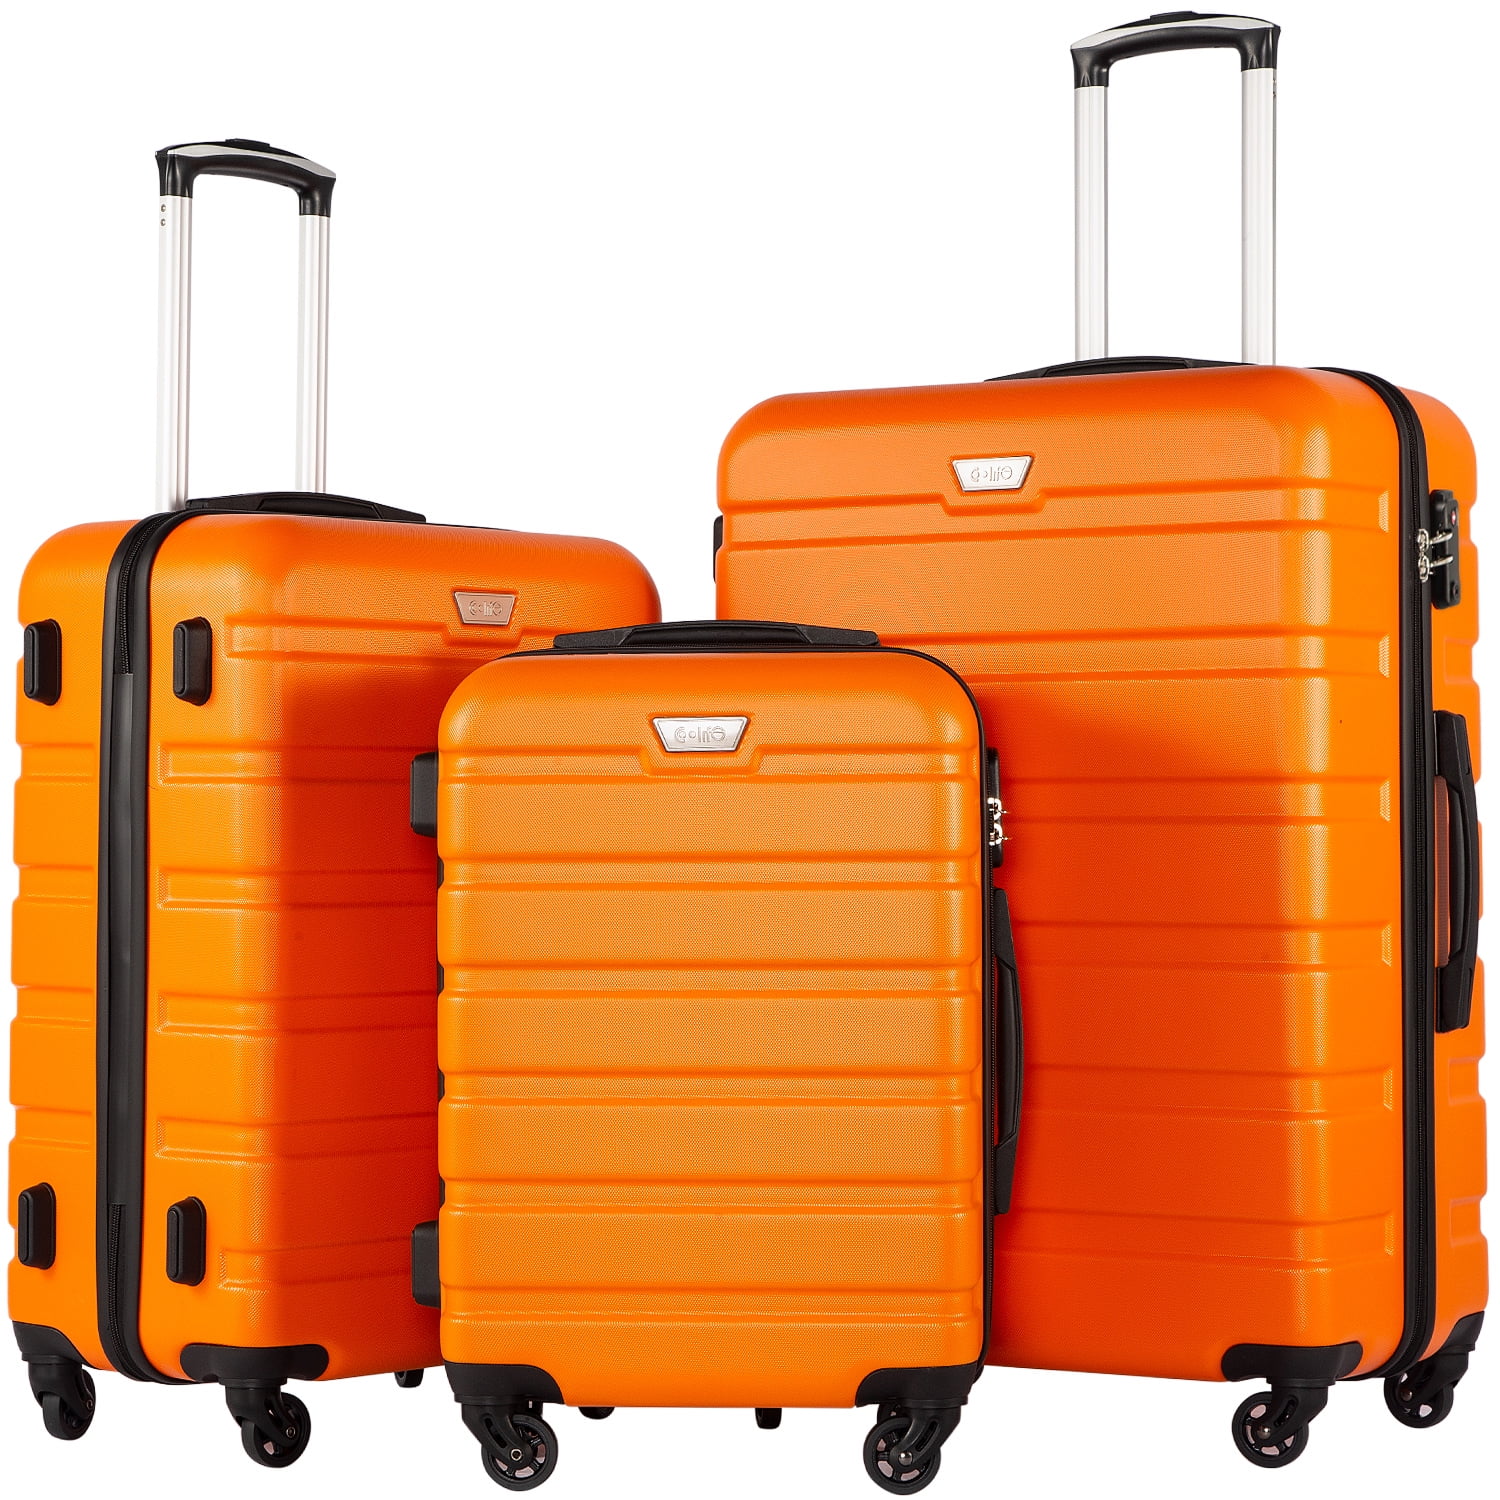 travel gear luggage company